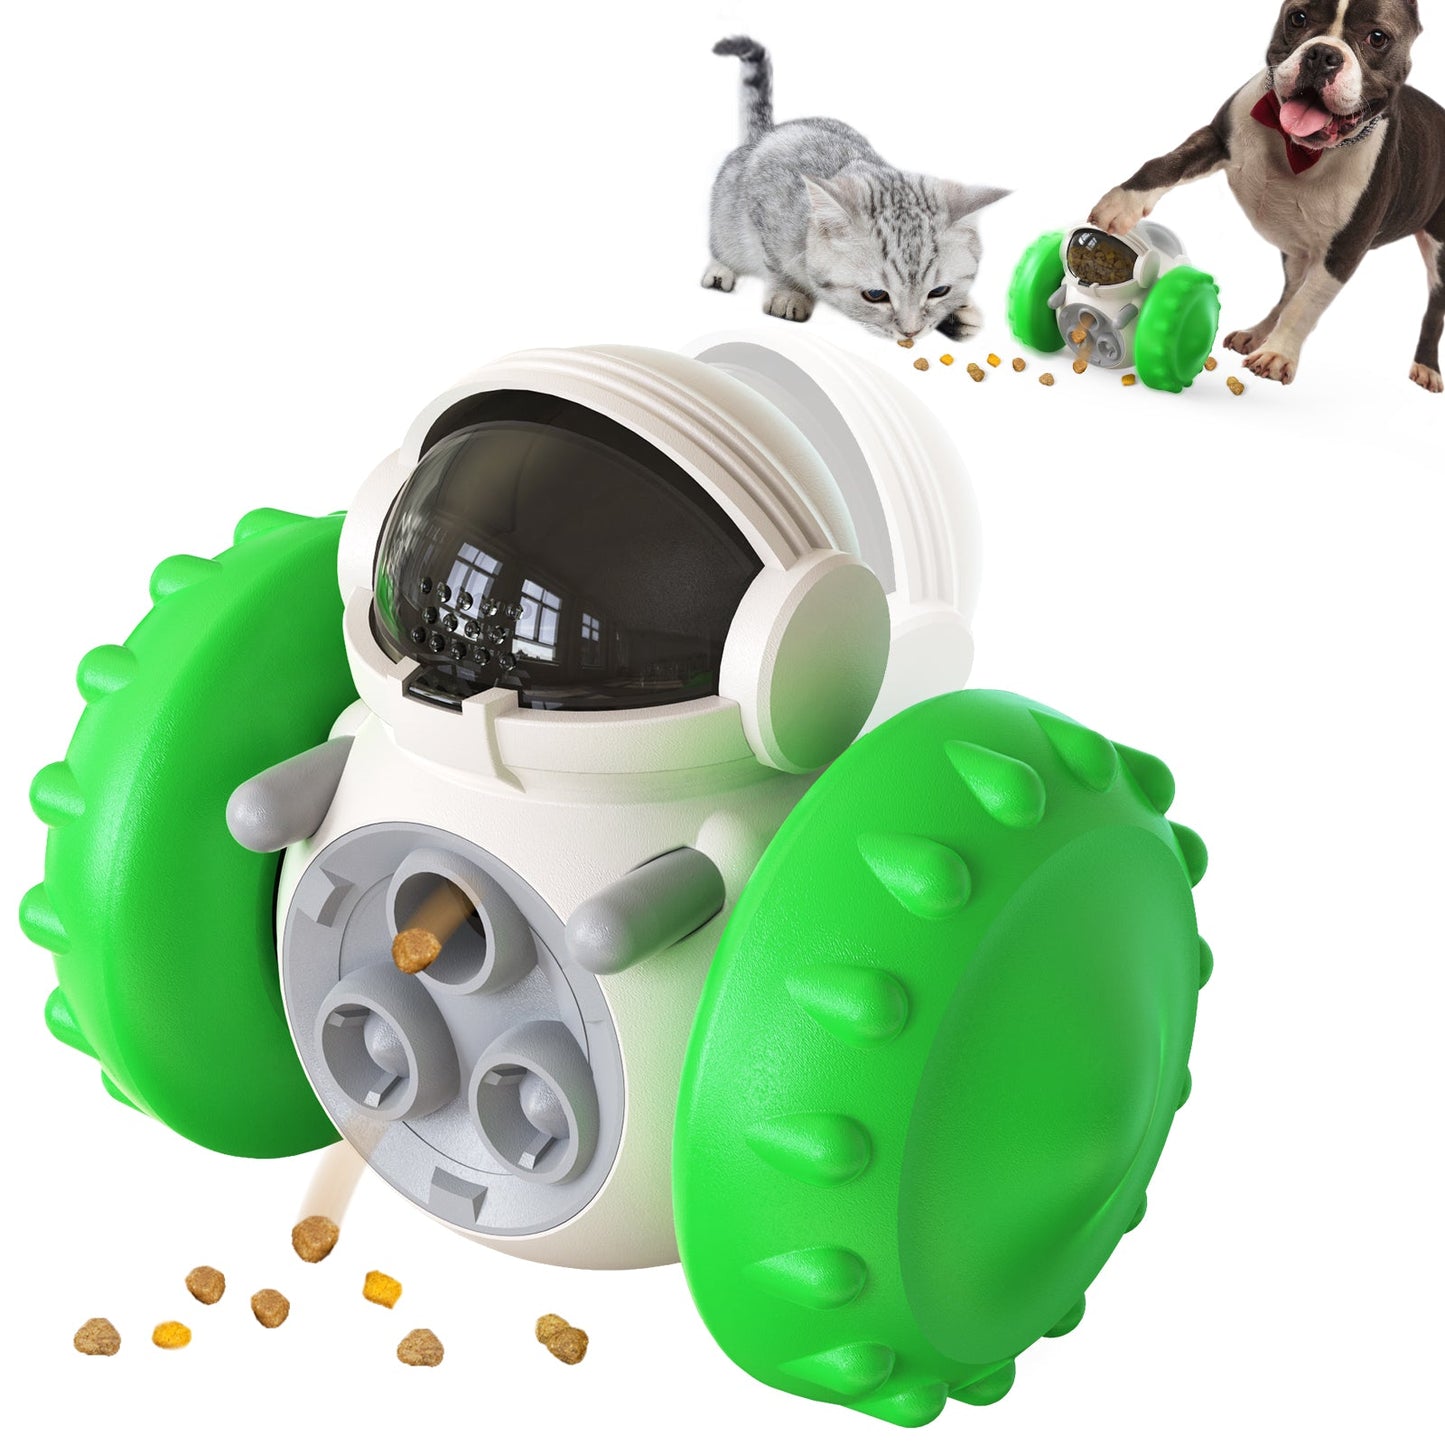 https://wowpetsmart.com/cdn/shop/products/slow-feeder-dog-bowl-toy-468287.jpg?v=1655841726&width=1445